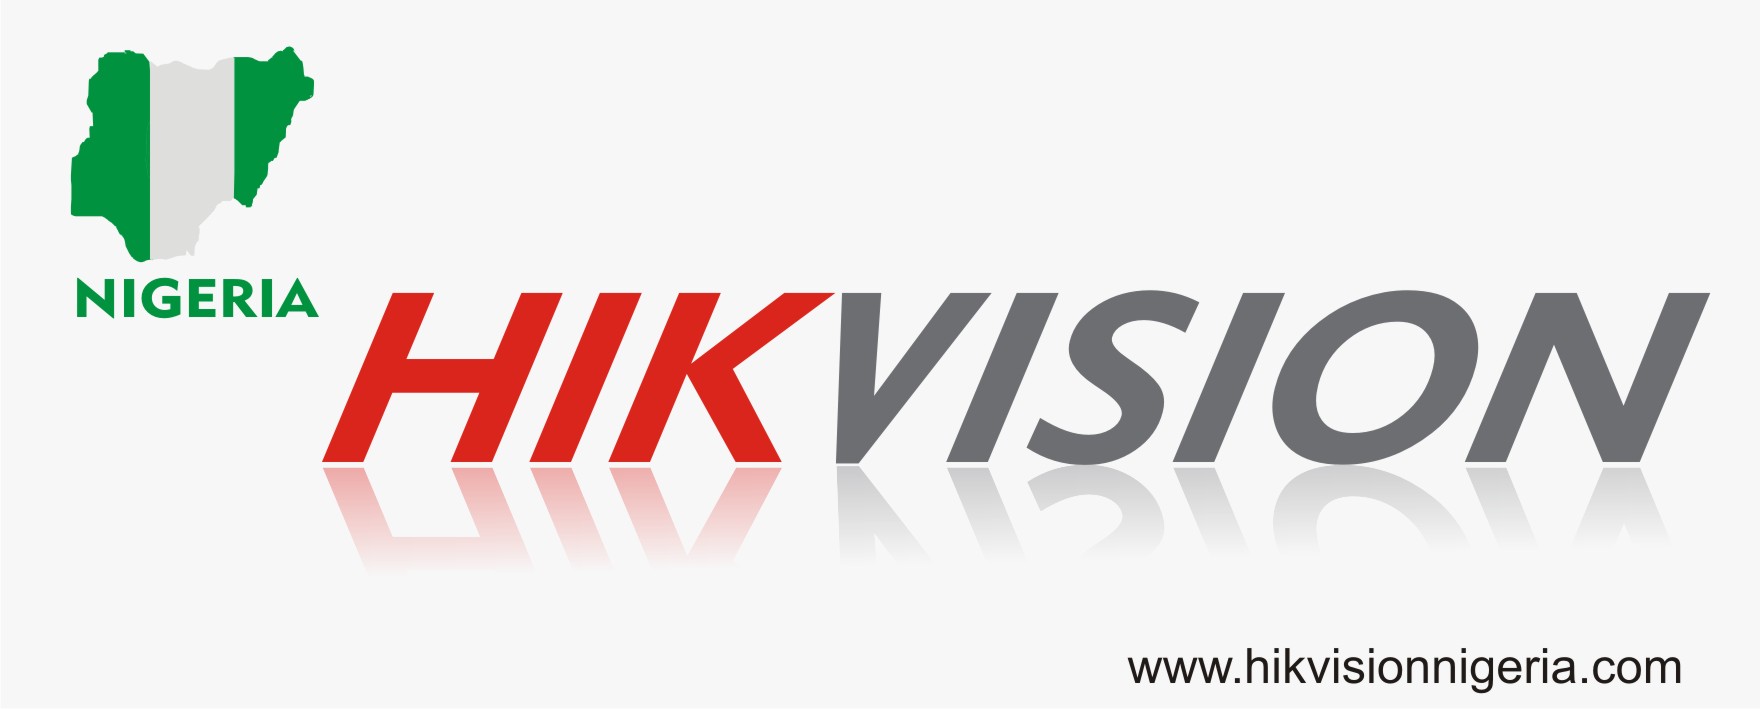 Logos Marketing Portal Hikvision - Color Vu Png,Portal 2 Logos - free transparent  png images - pngaaa.com